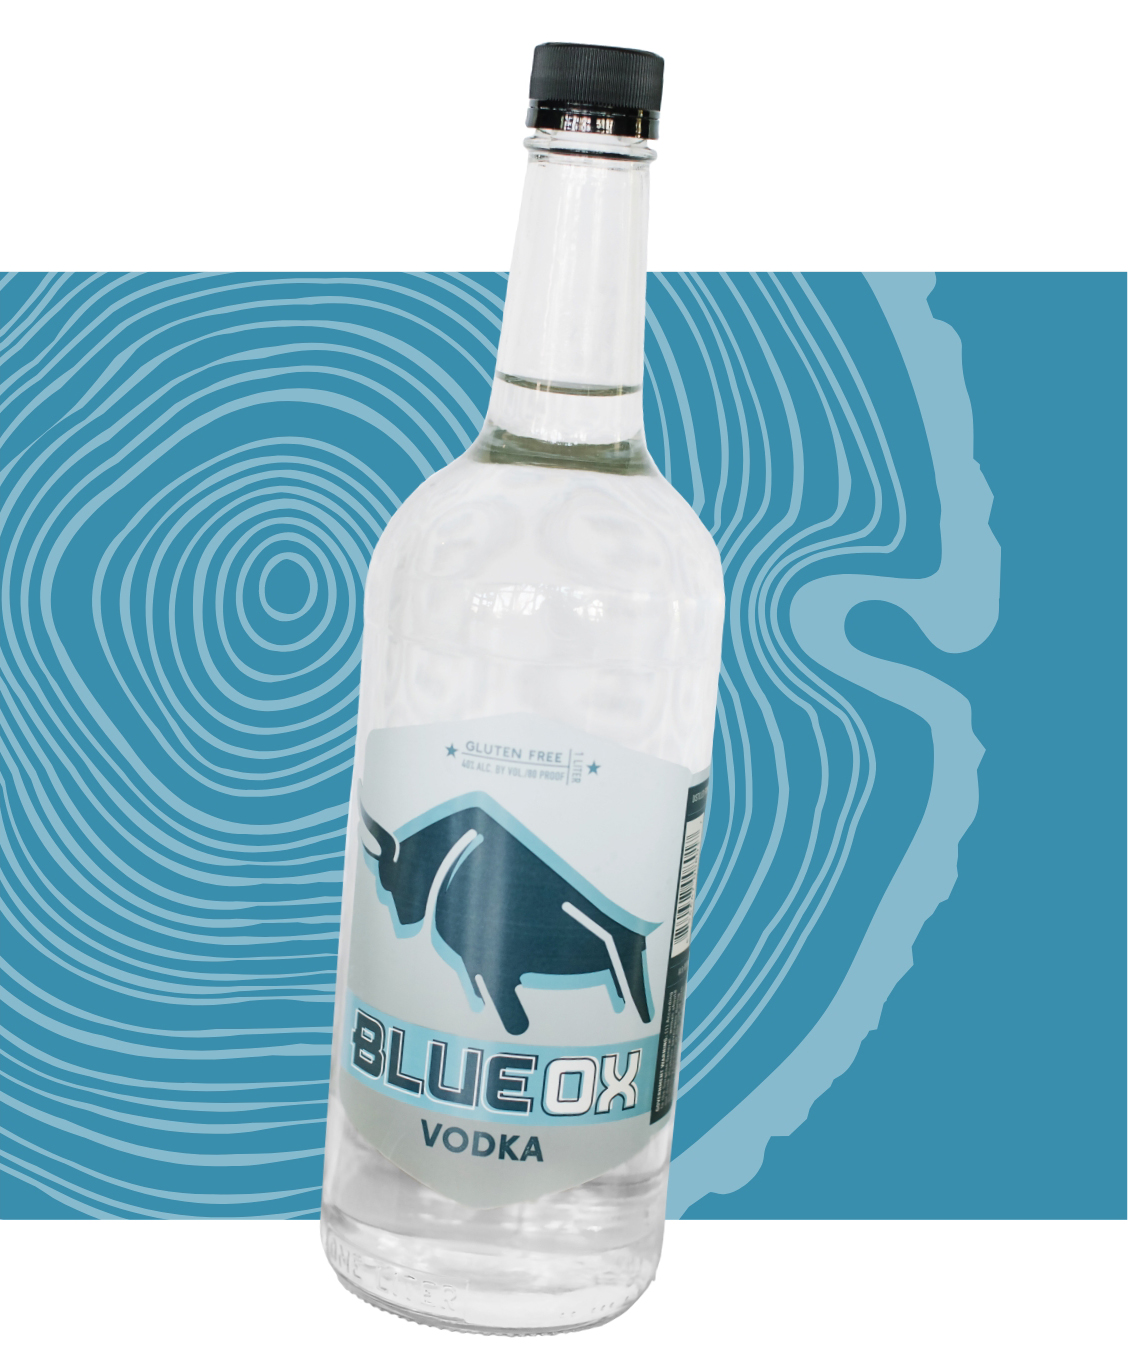 A bottle of Blue Ox vodka